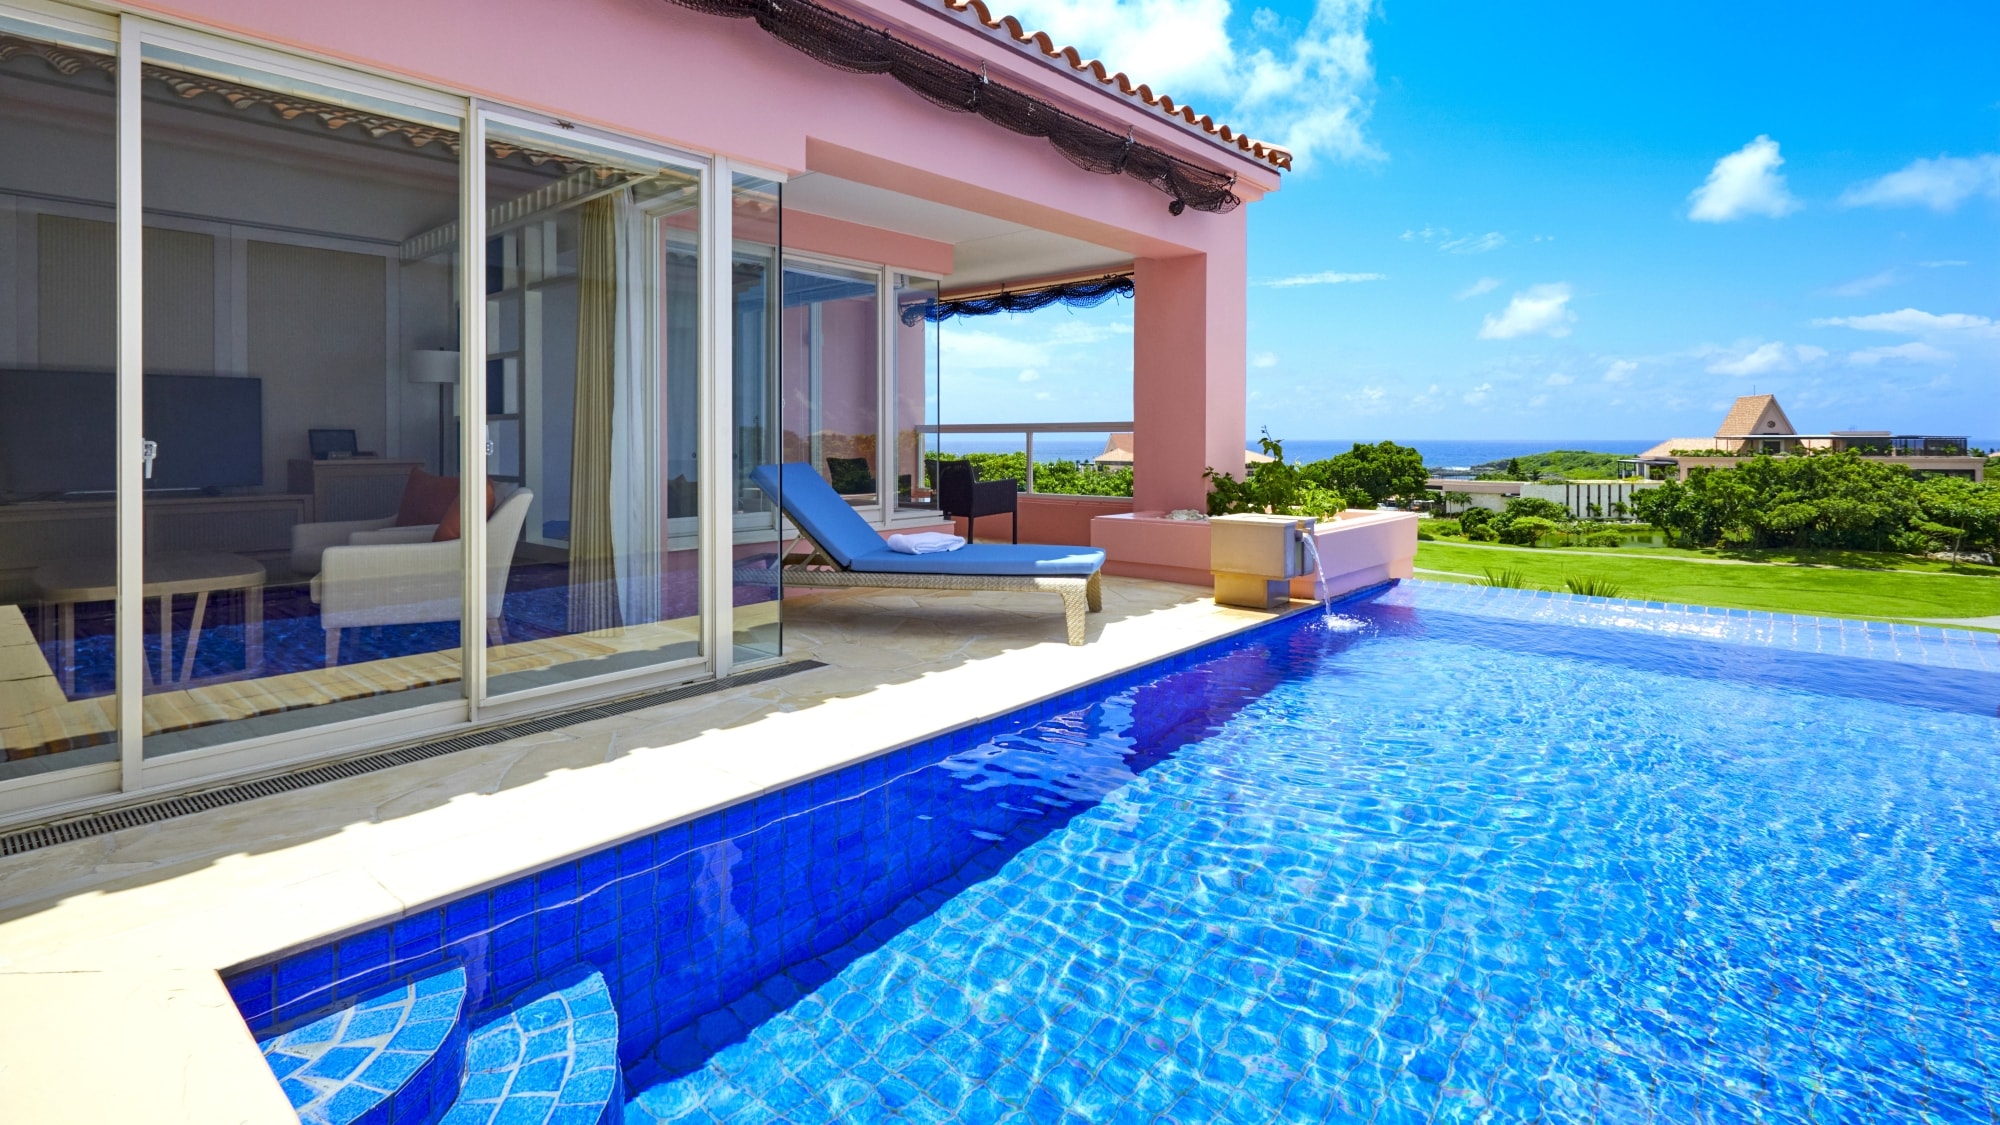 [Pool Villa Premier 2F] Kolam renang pribadi dengan permukaan air biru yang mempesona terbentang di teras.